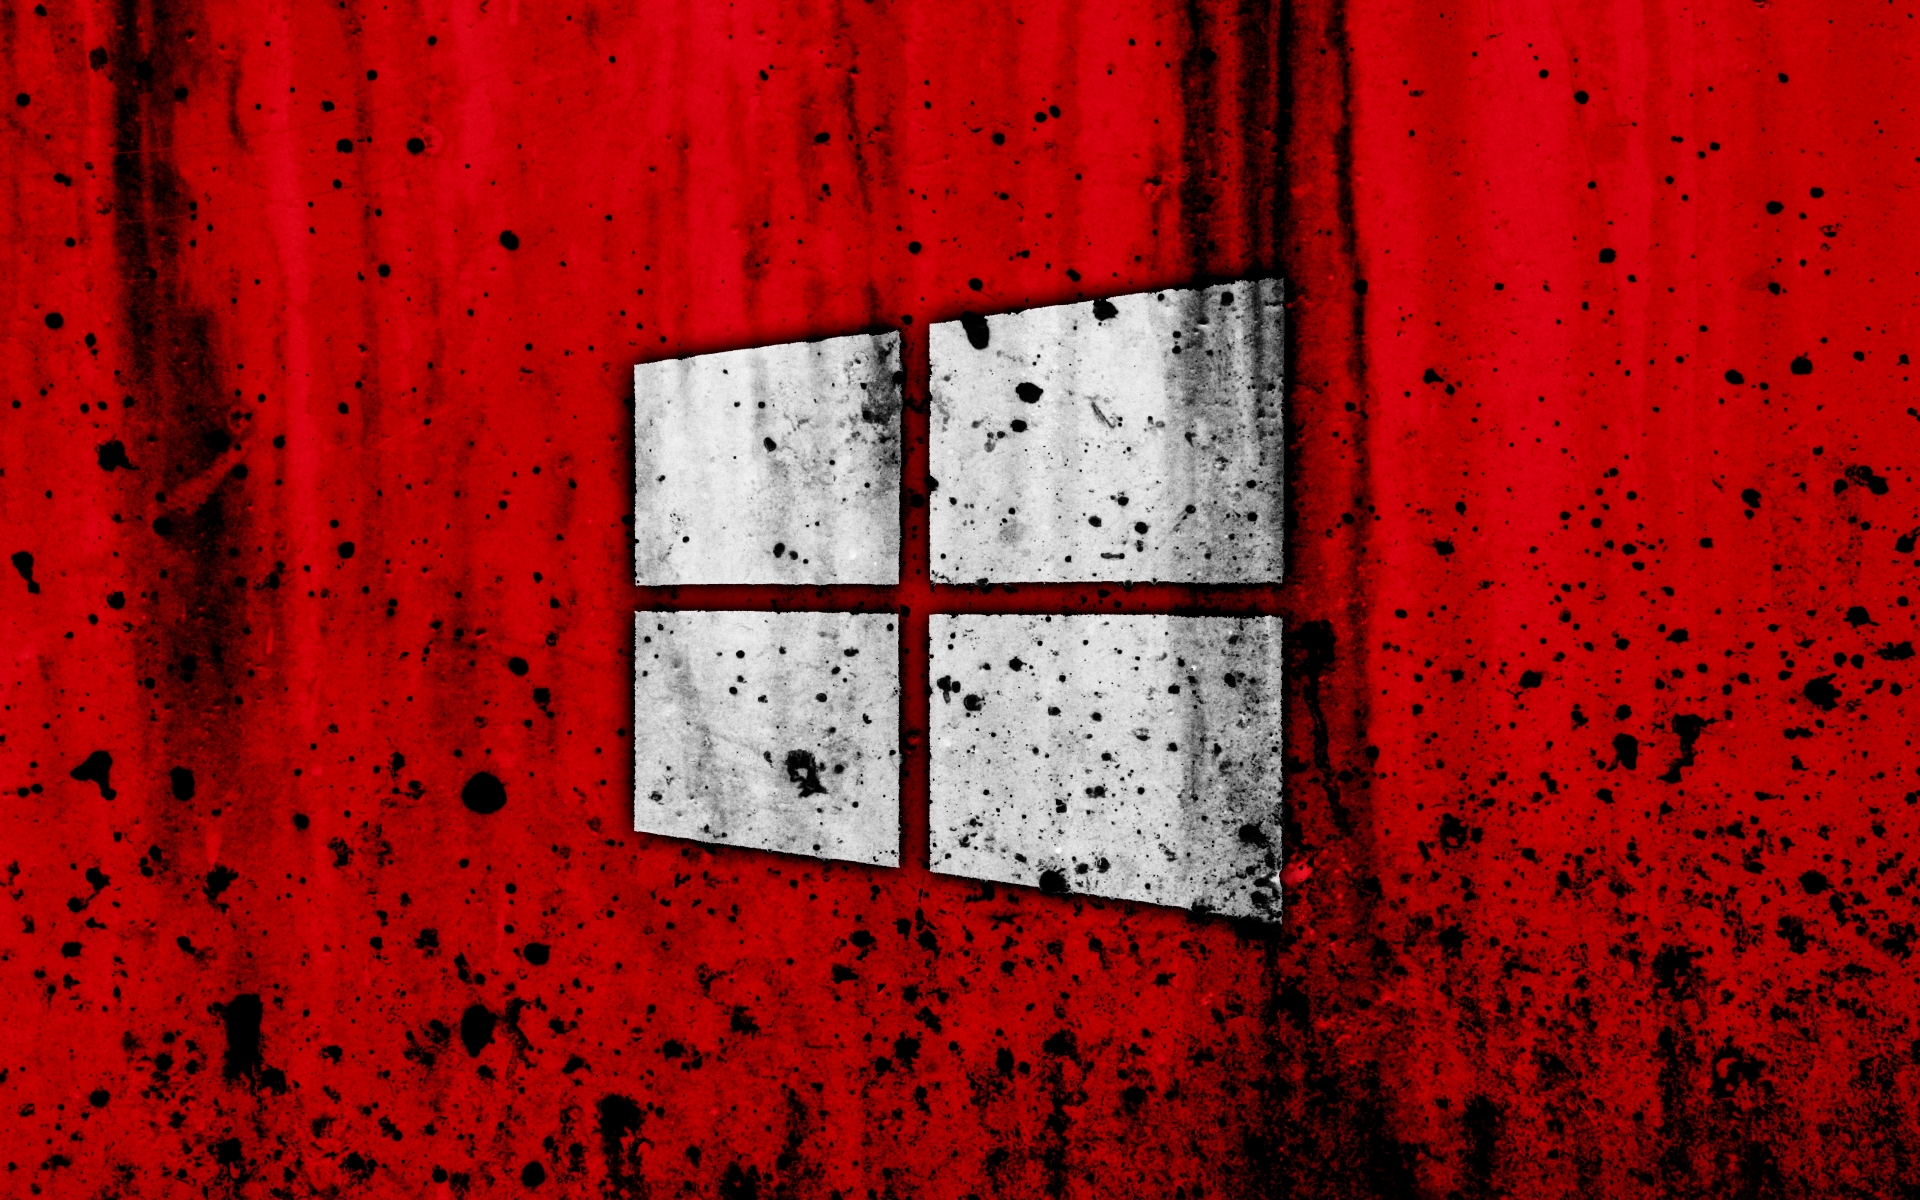 logo-red-background-grunge-creative-windows 10-1920x1200.jpg